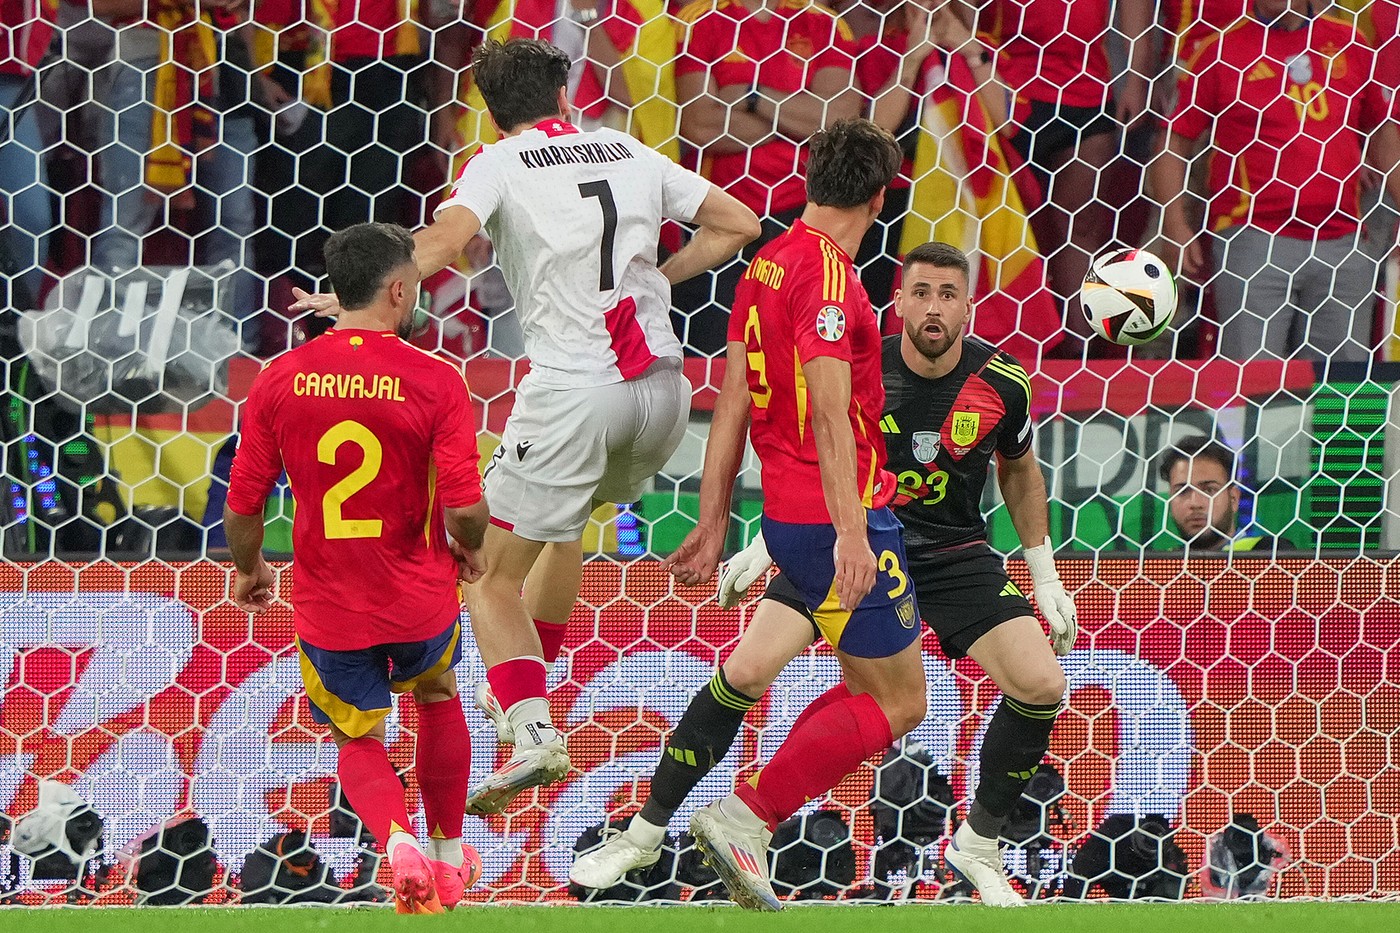 Spania - Georgia 1-1, ACUM, pe digisport.ro. ”Furia Roja” a egalat, după ce și-a băgat mingea în propria poartă